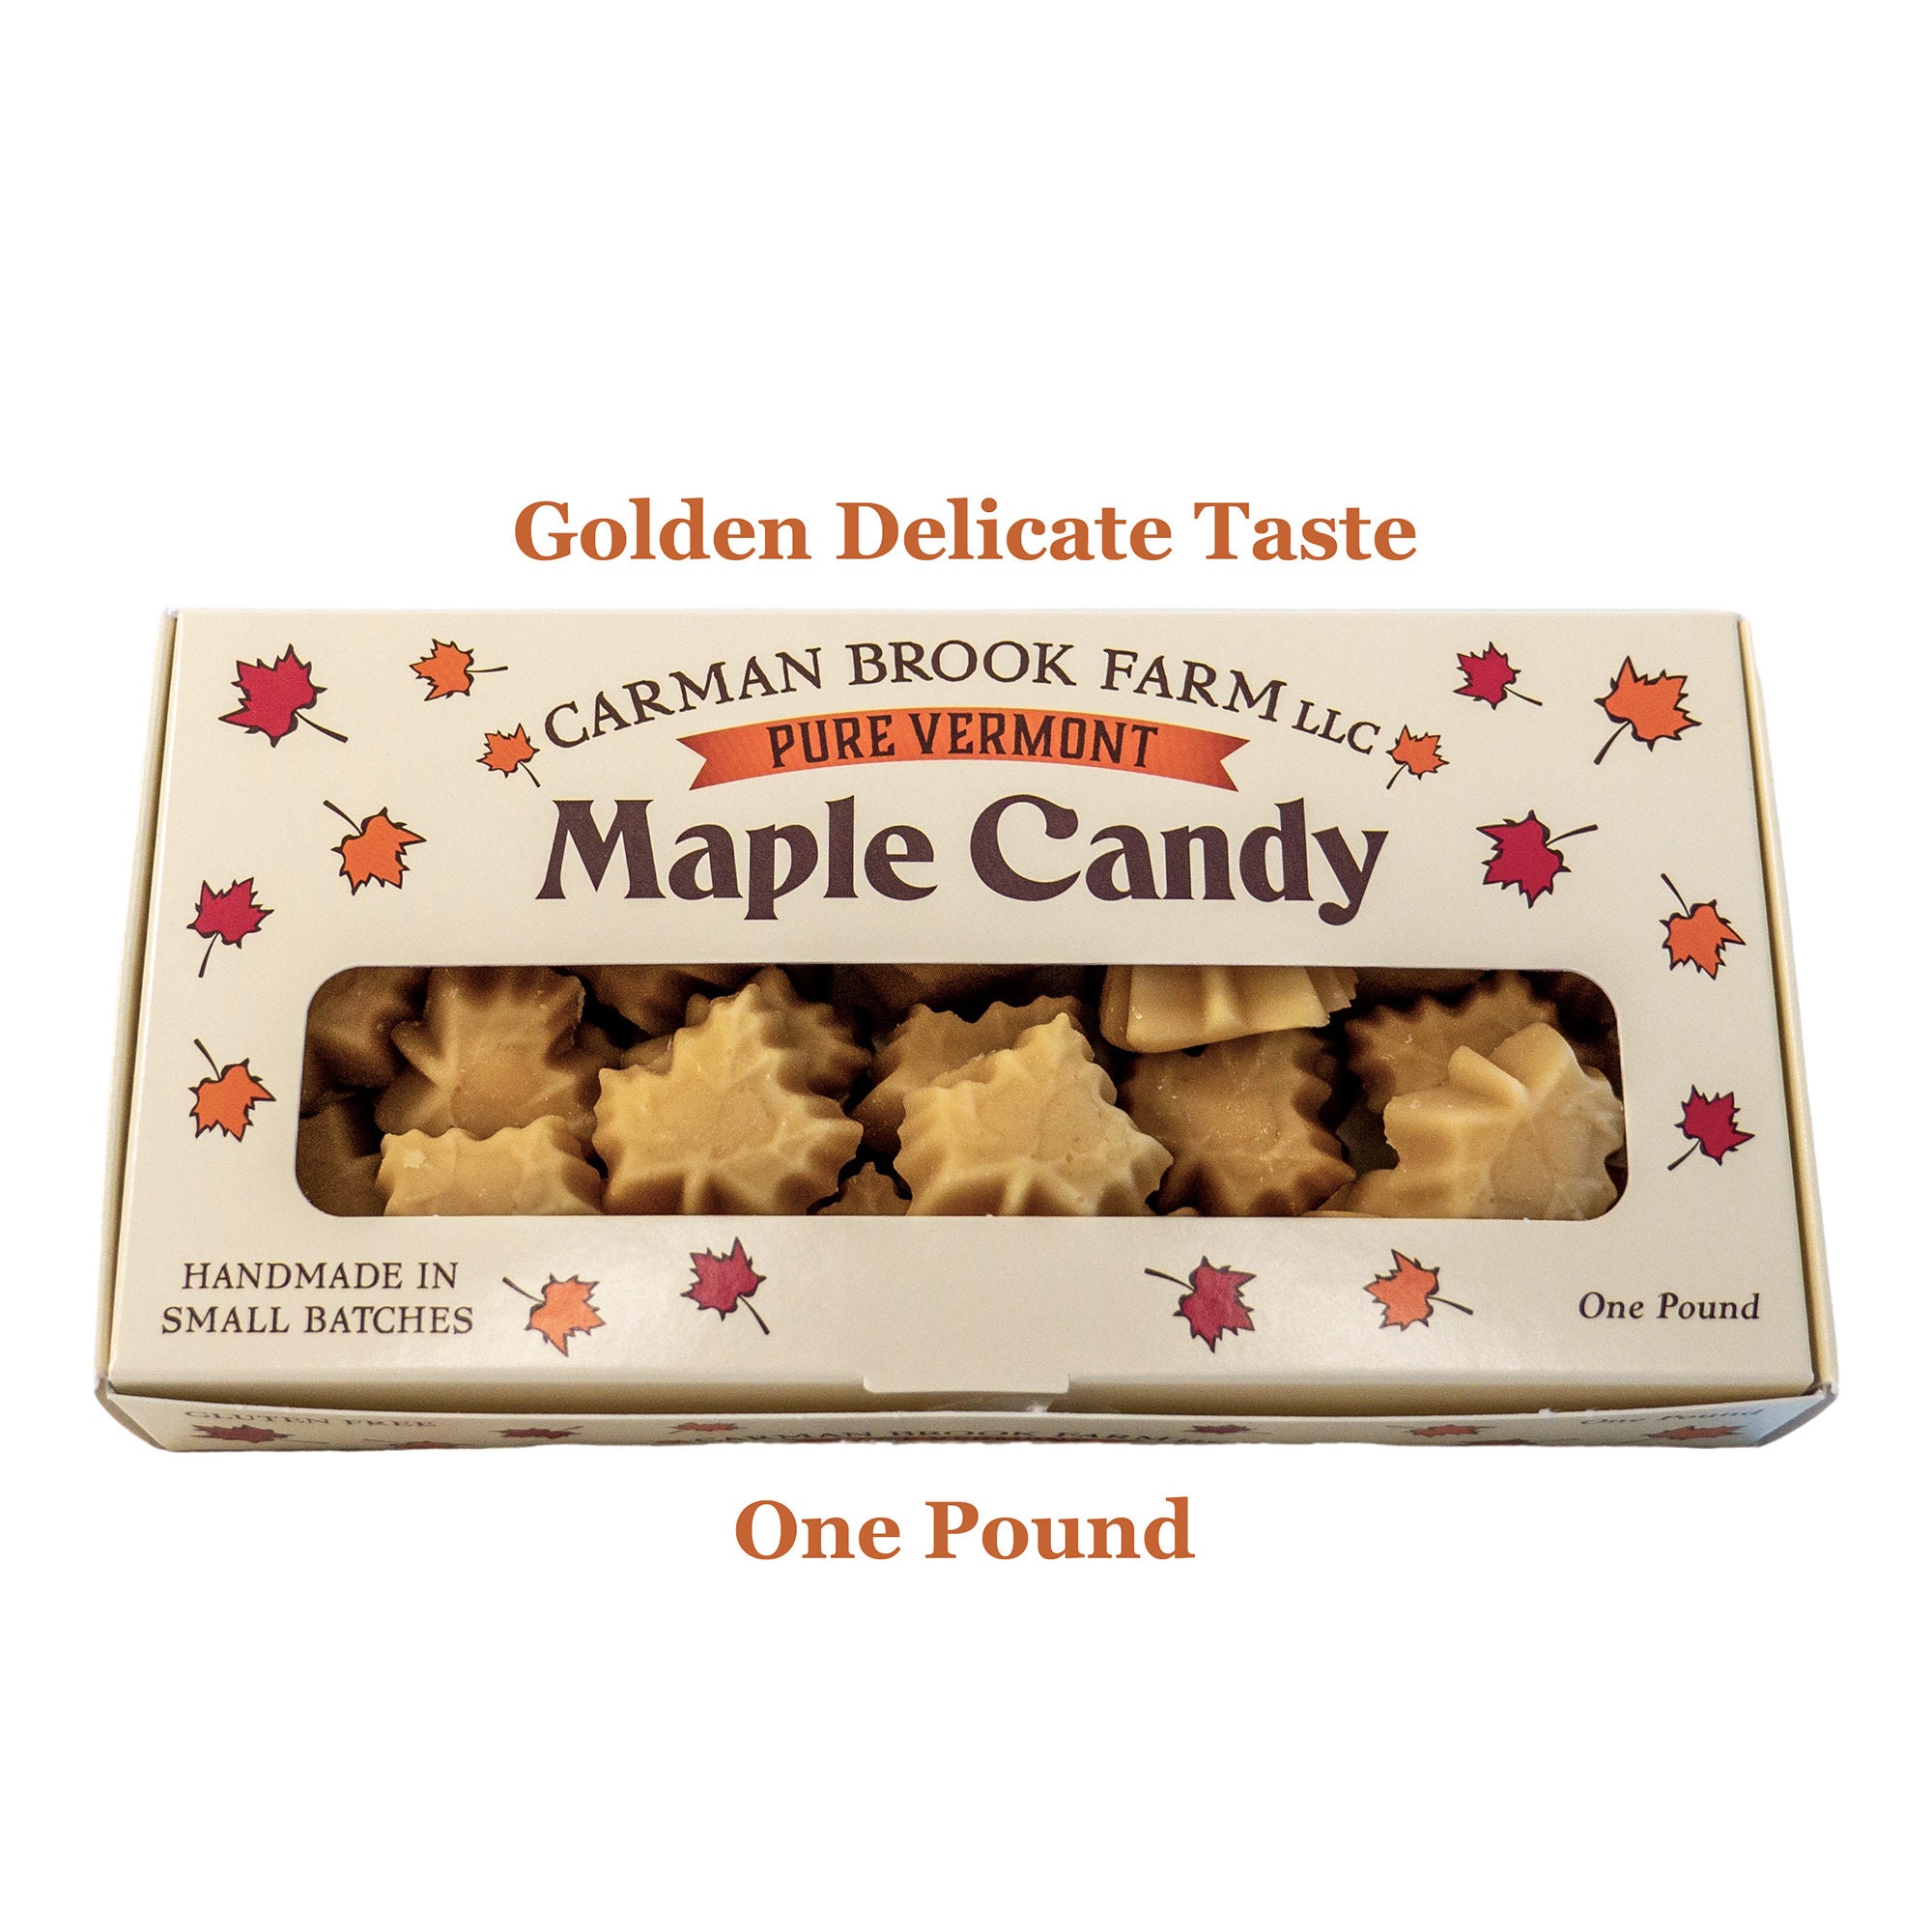 Is Maple Syrup Gluten Free? – Carman Brook Farm, LLC